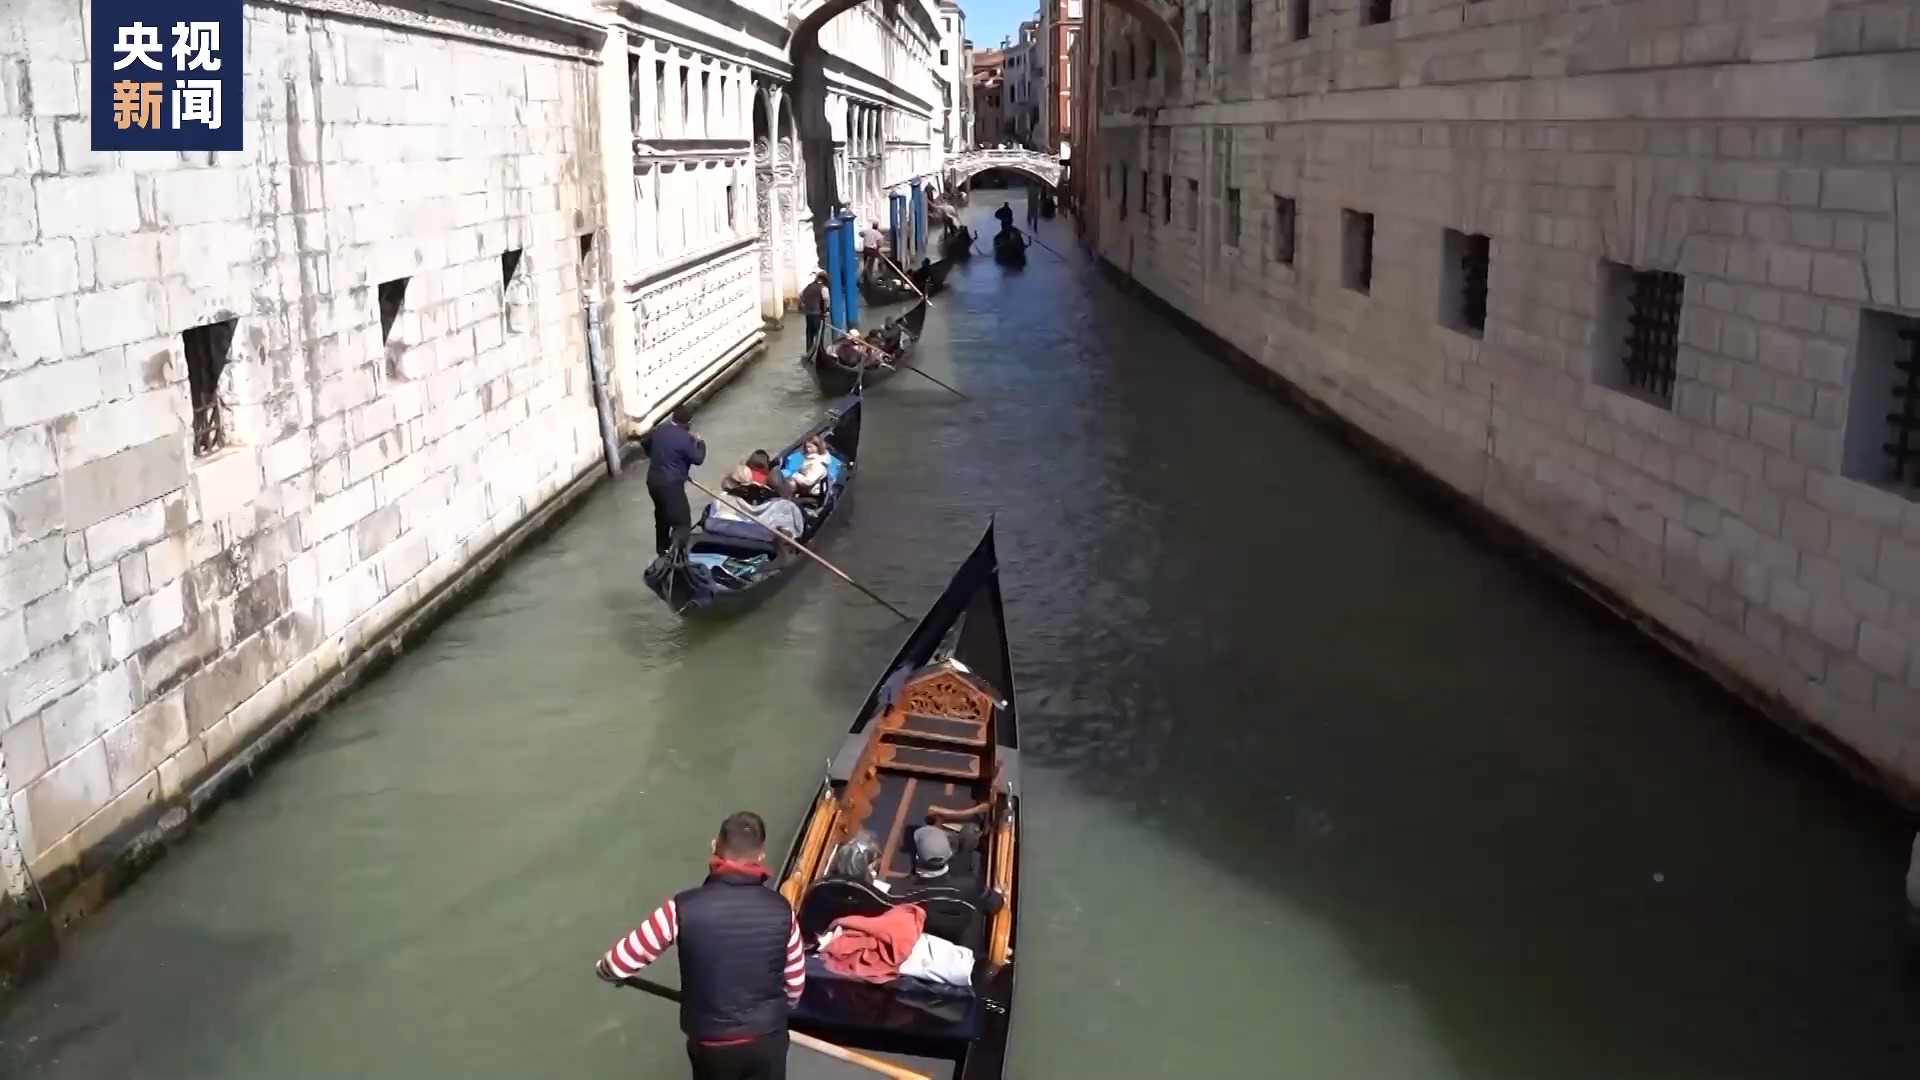 意大利威尼斯开收“进城费” 游客反应不一